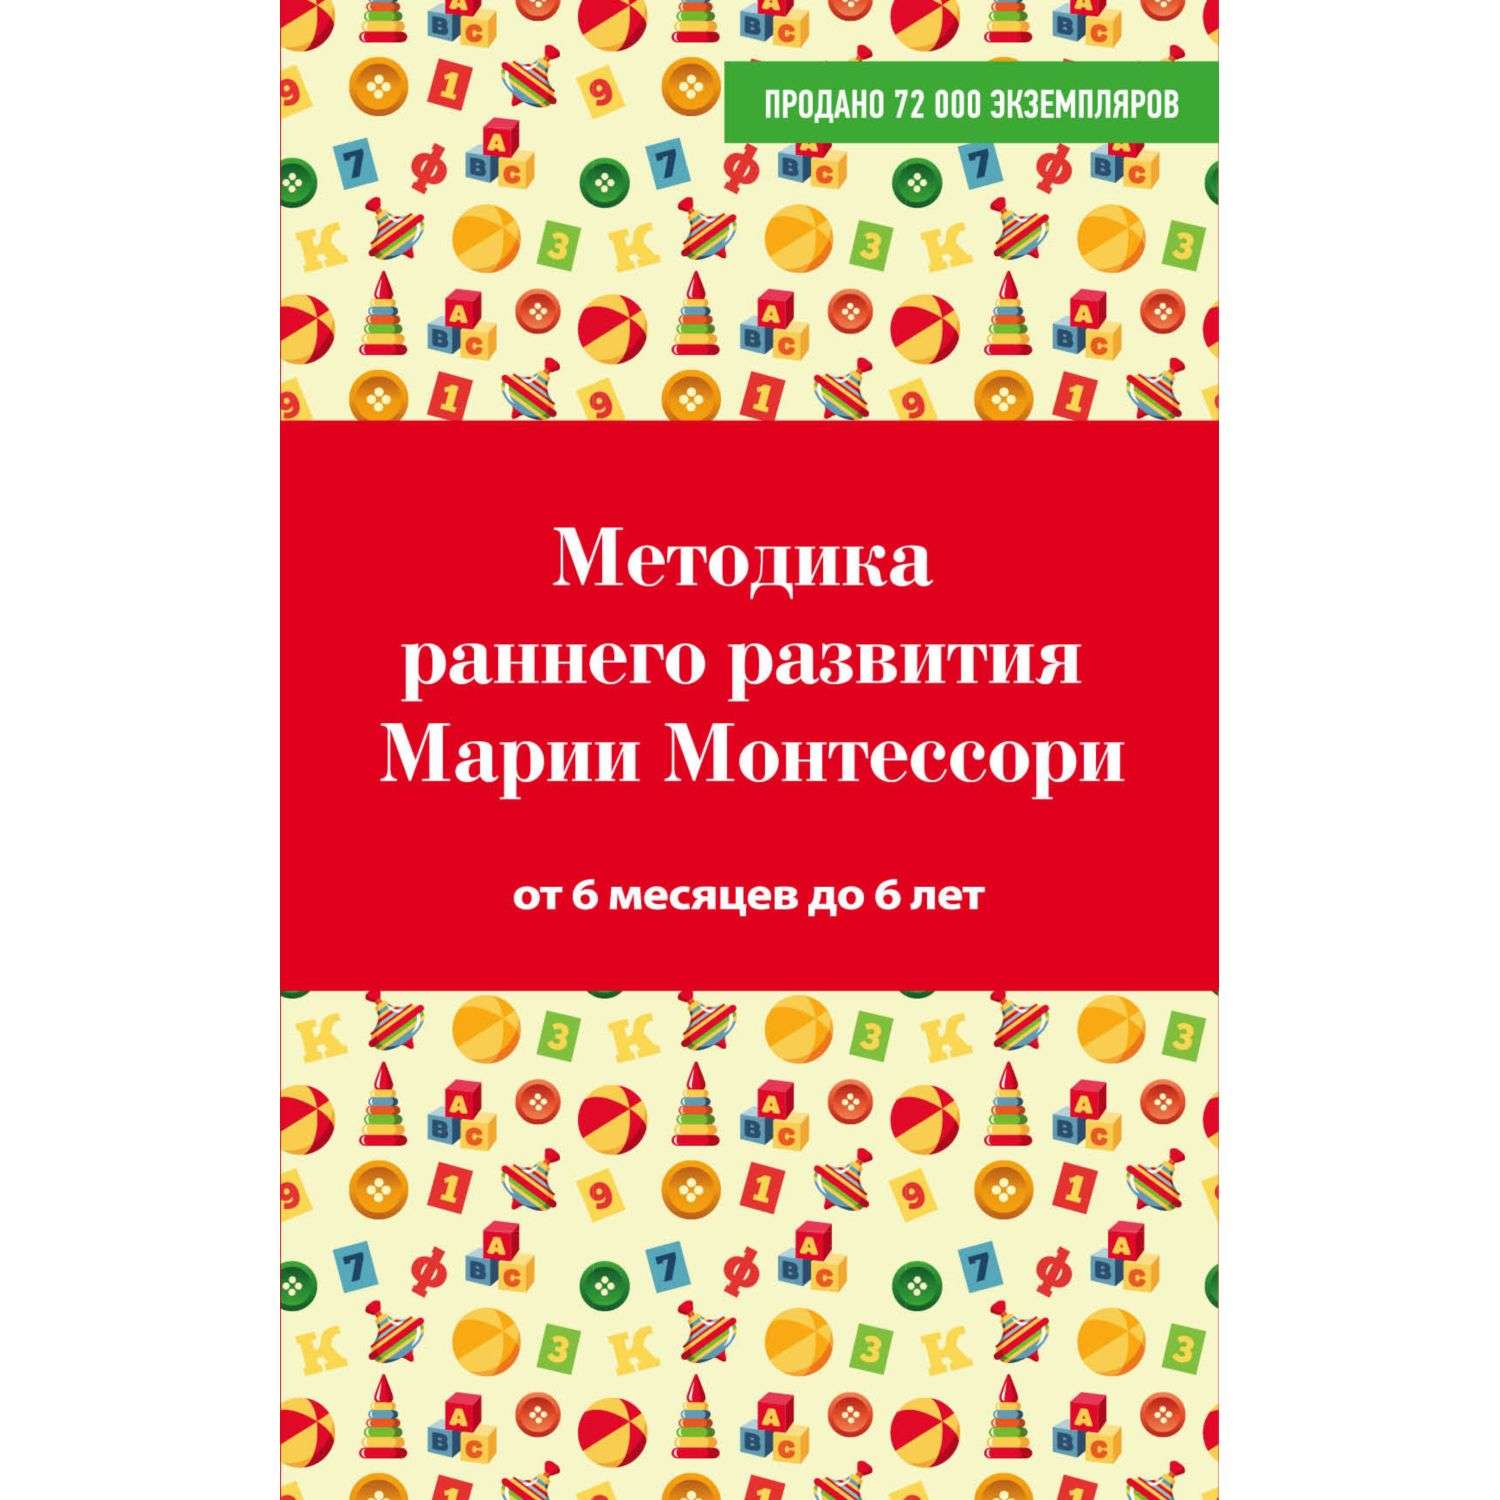 Книга Эксмо Методика раннего развития Марии Монтессори От 6 месяцев до 6лет - фото 1